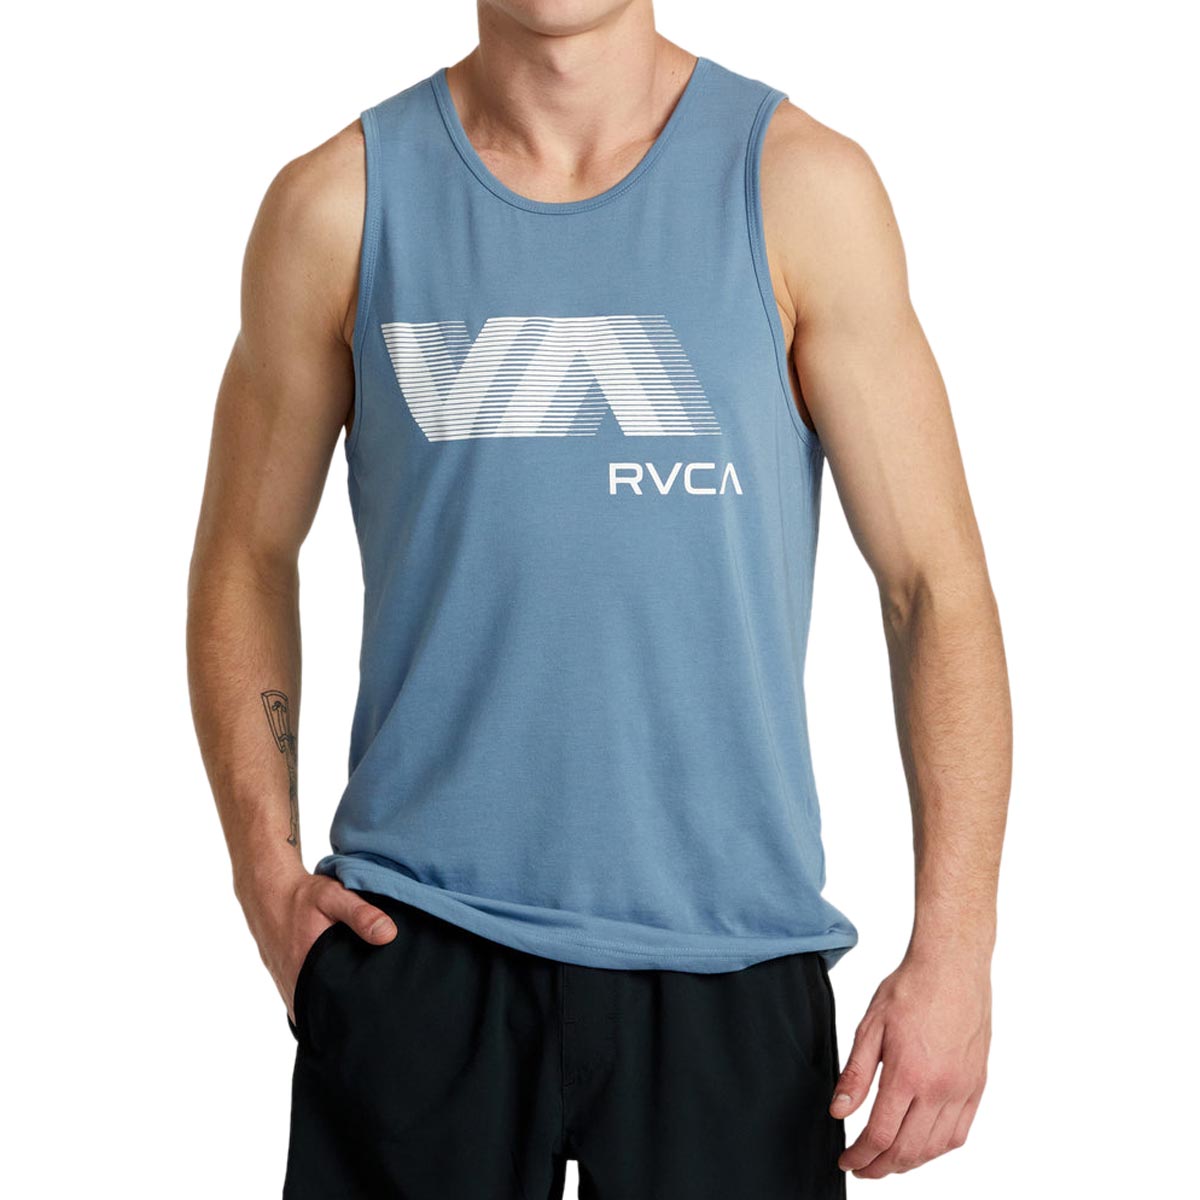 RVCA VA Blur Tank Top - Blue Tack image 2